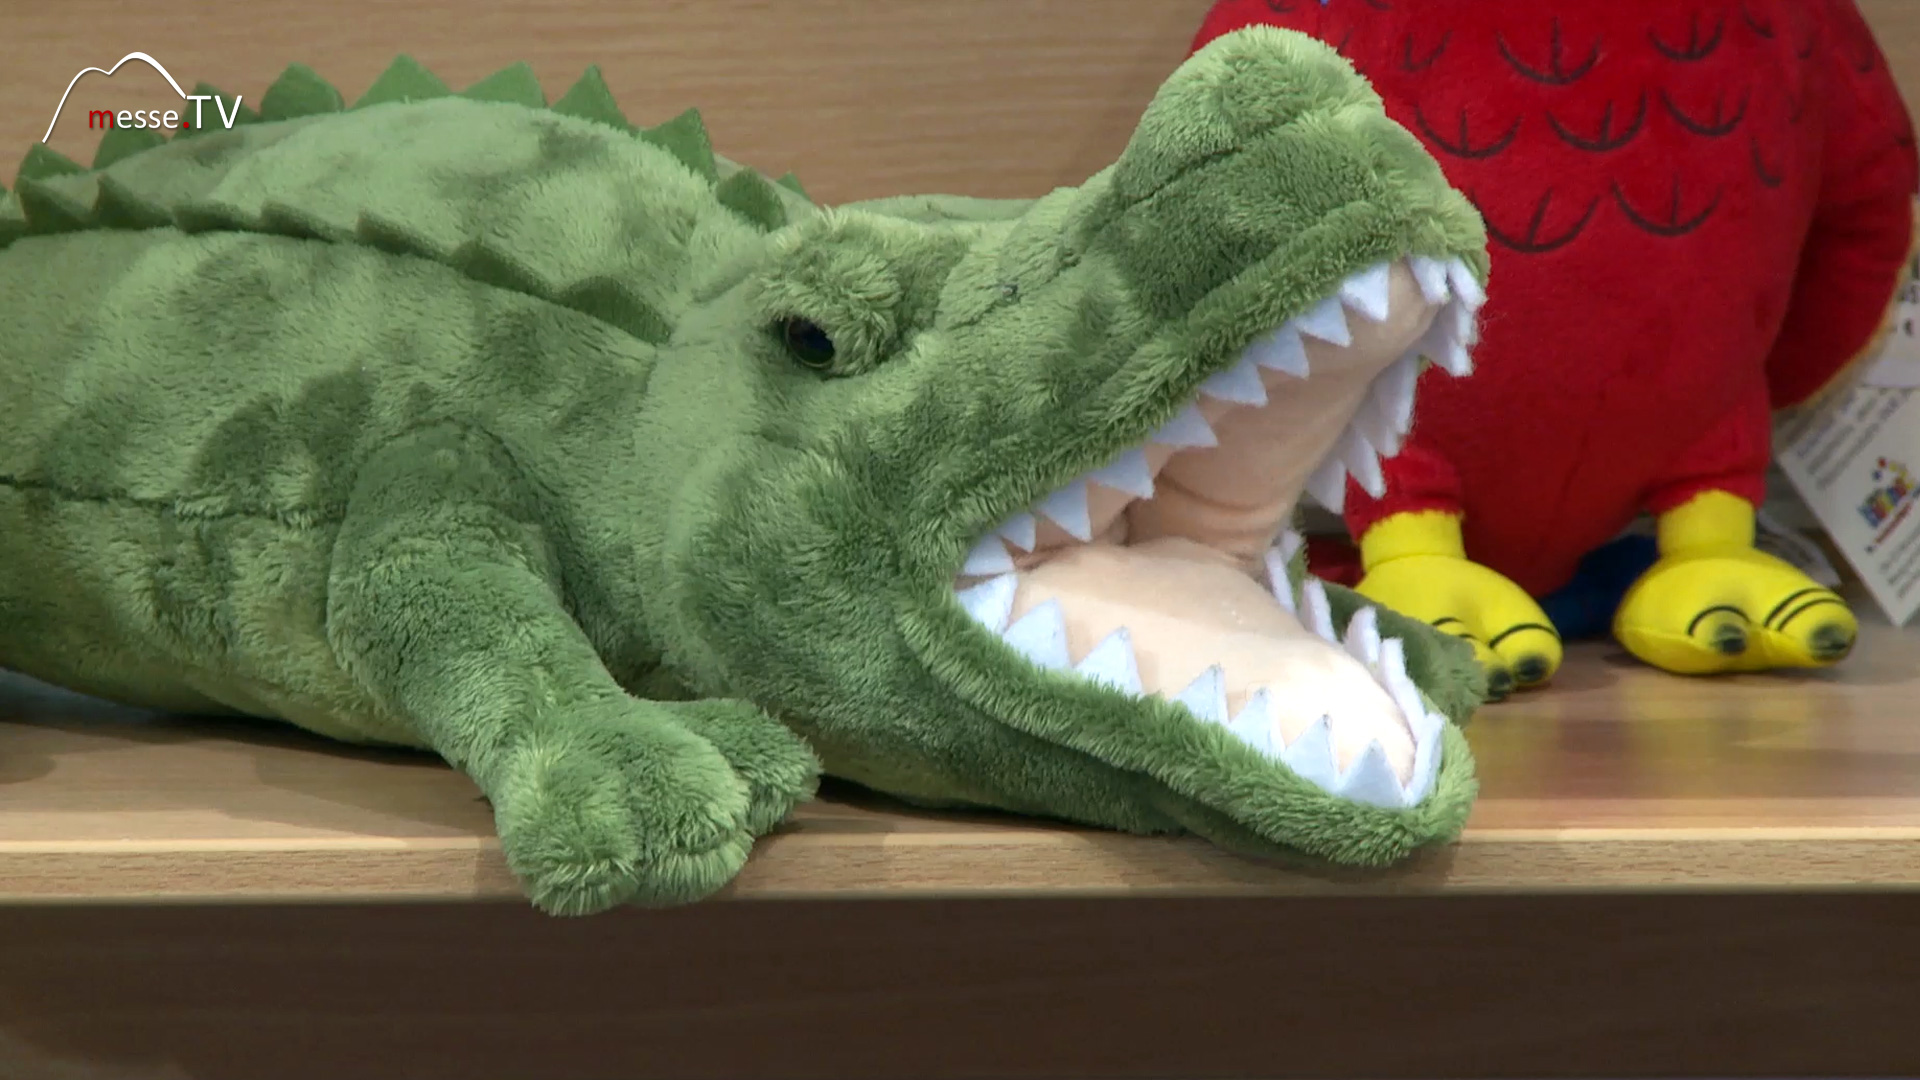 cuddly toy crocodile Heunec